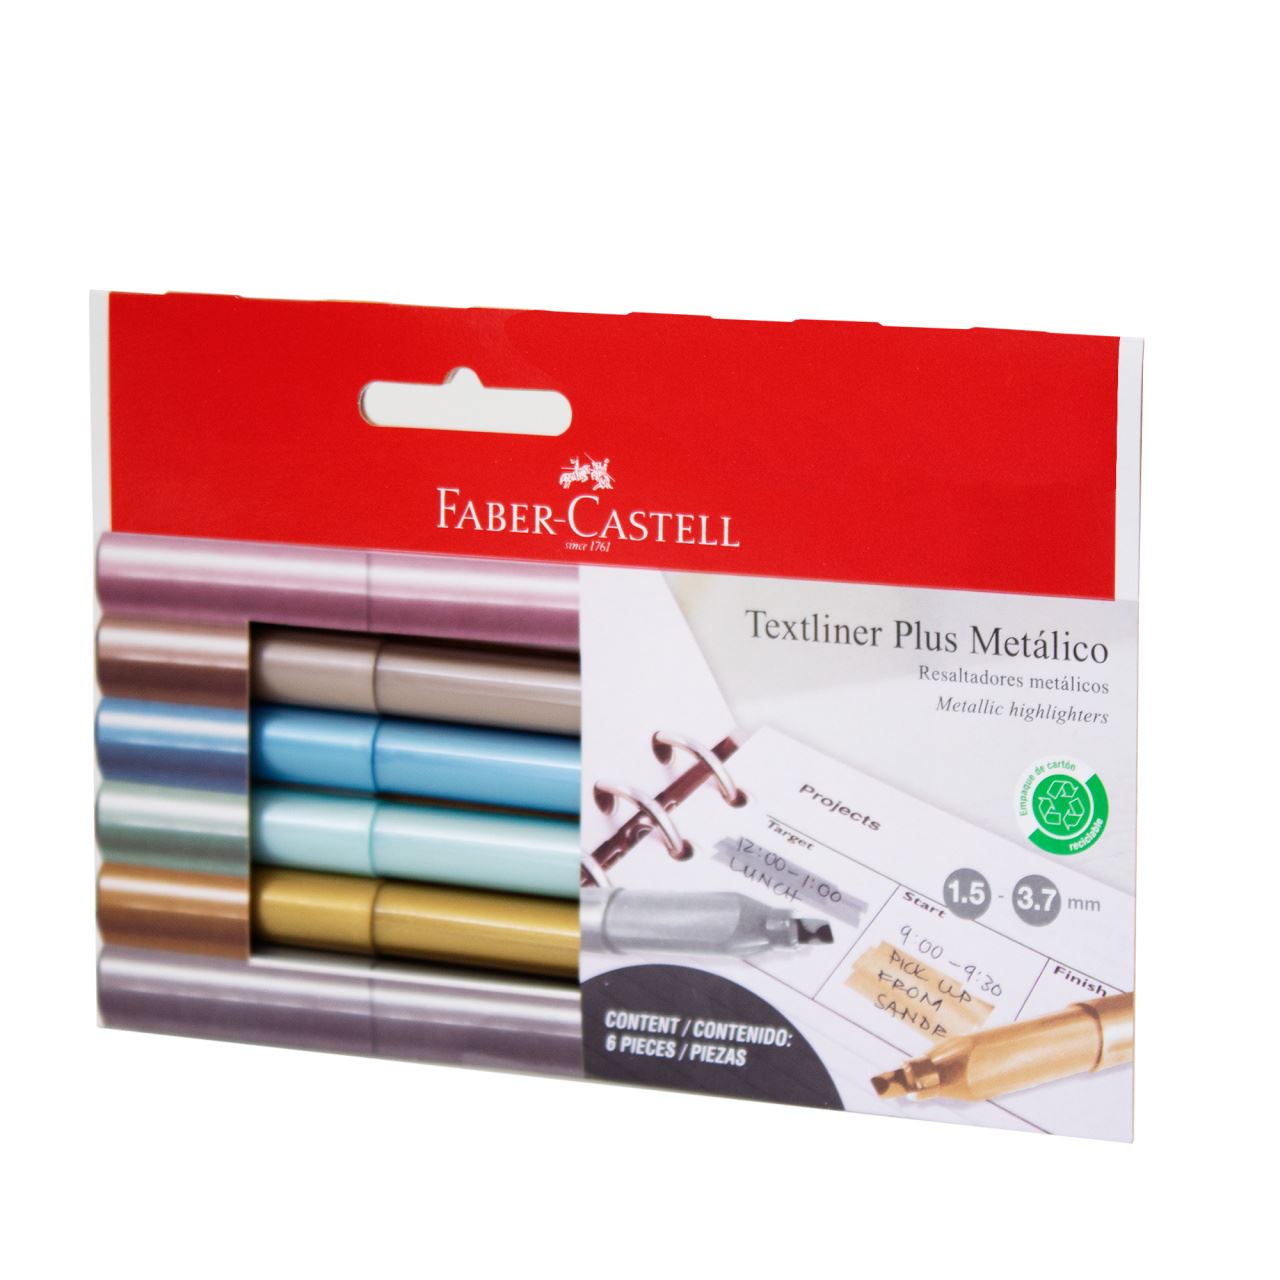 Faber-Castell - Resaltador Textliner Plus Metálico blíster de cartón x6